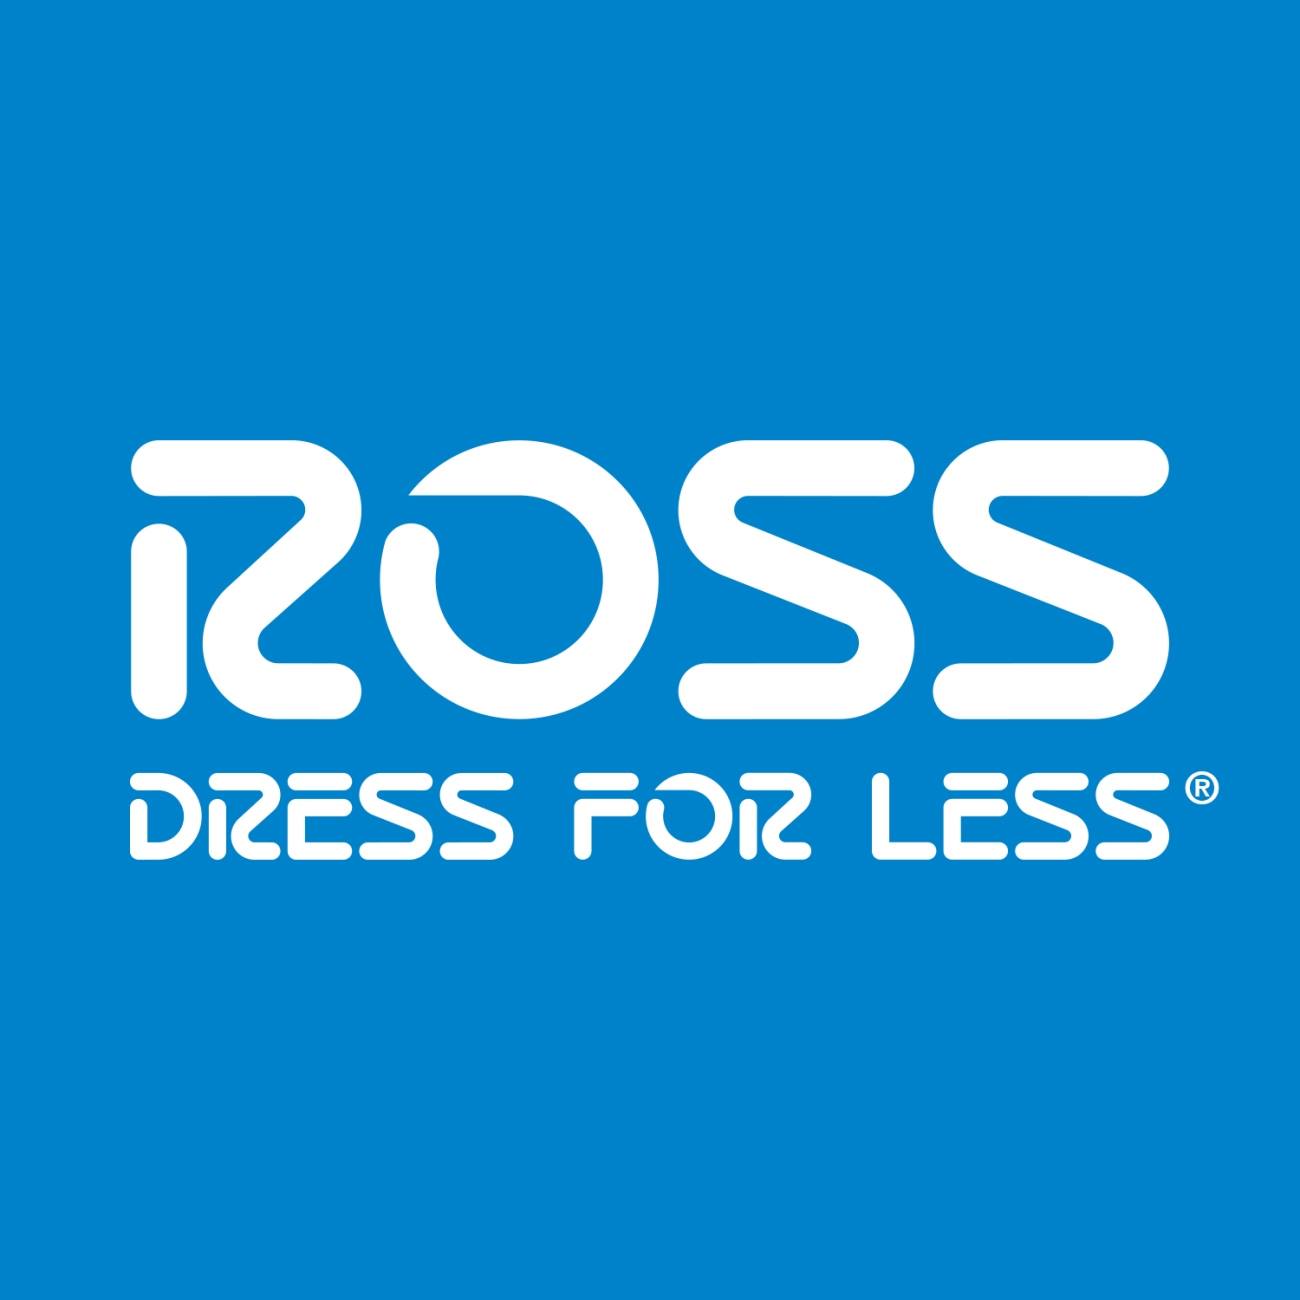 Business logo of Ross Dress for Less